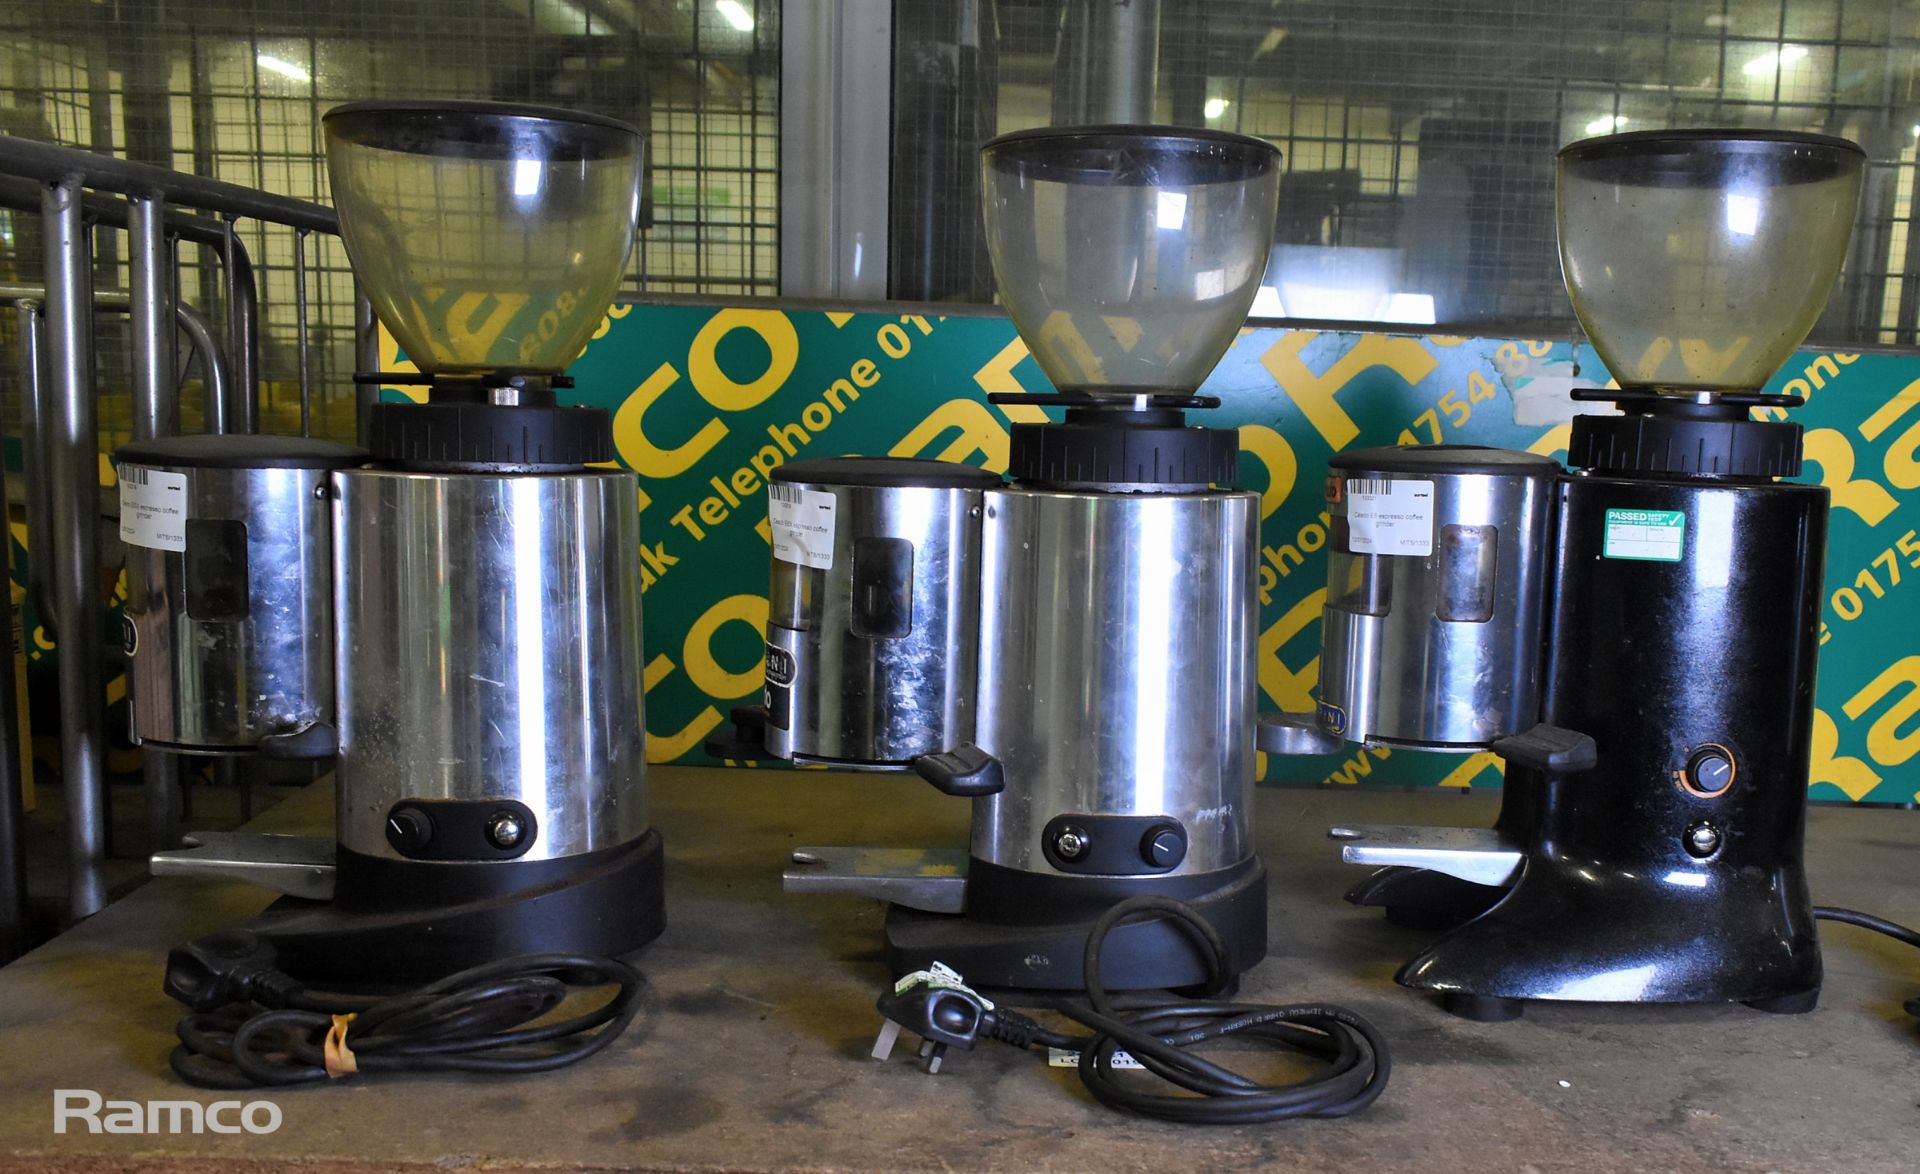 2x Ceado E6X espresso coffee grinders & Ceado E6 espresso coffee grinder - Image 4 of 7